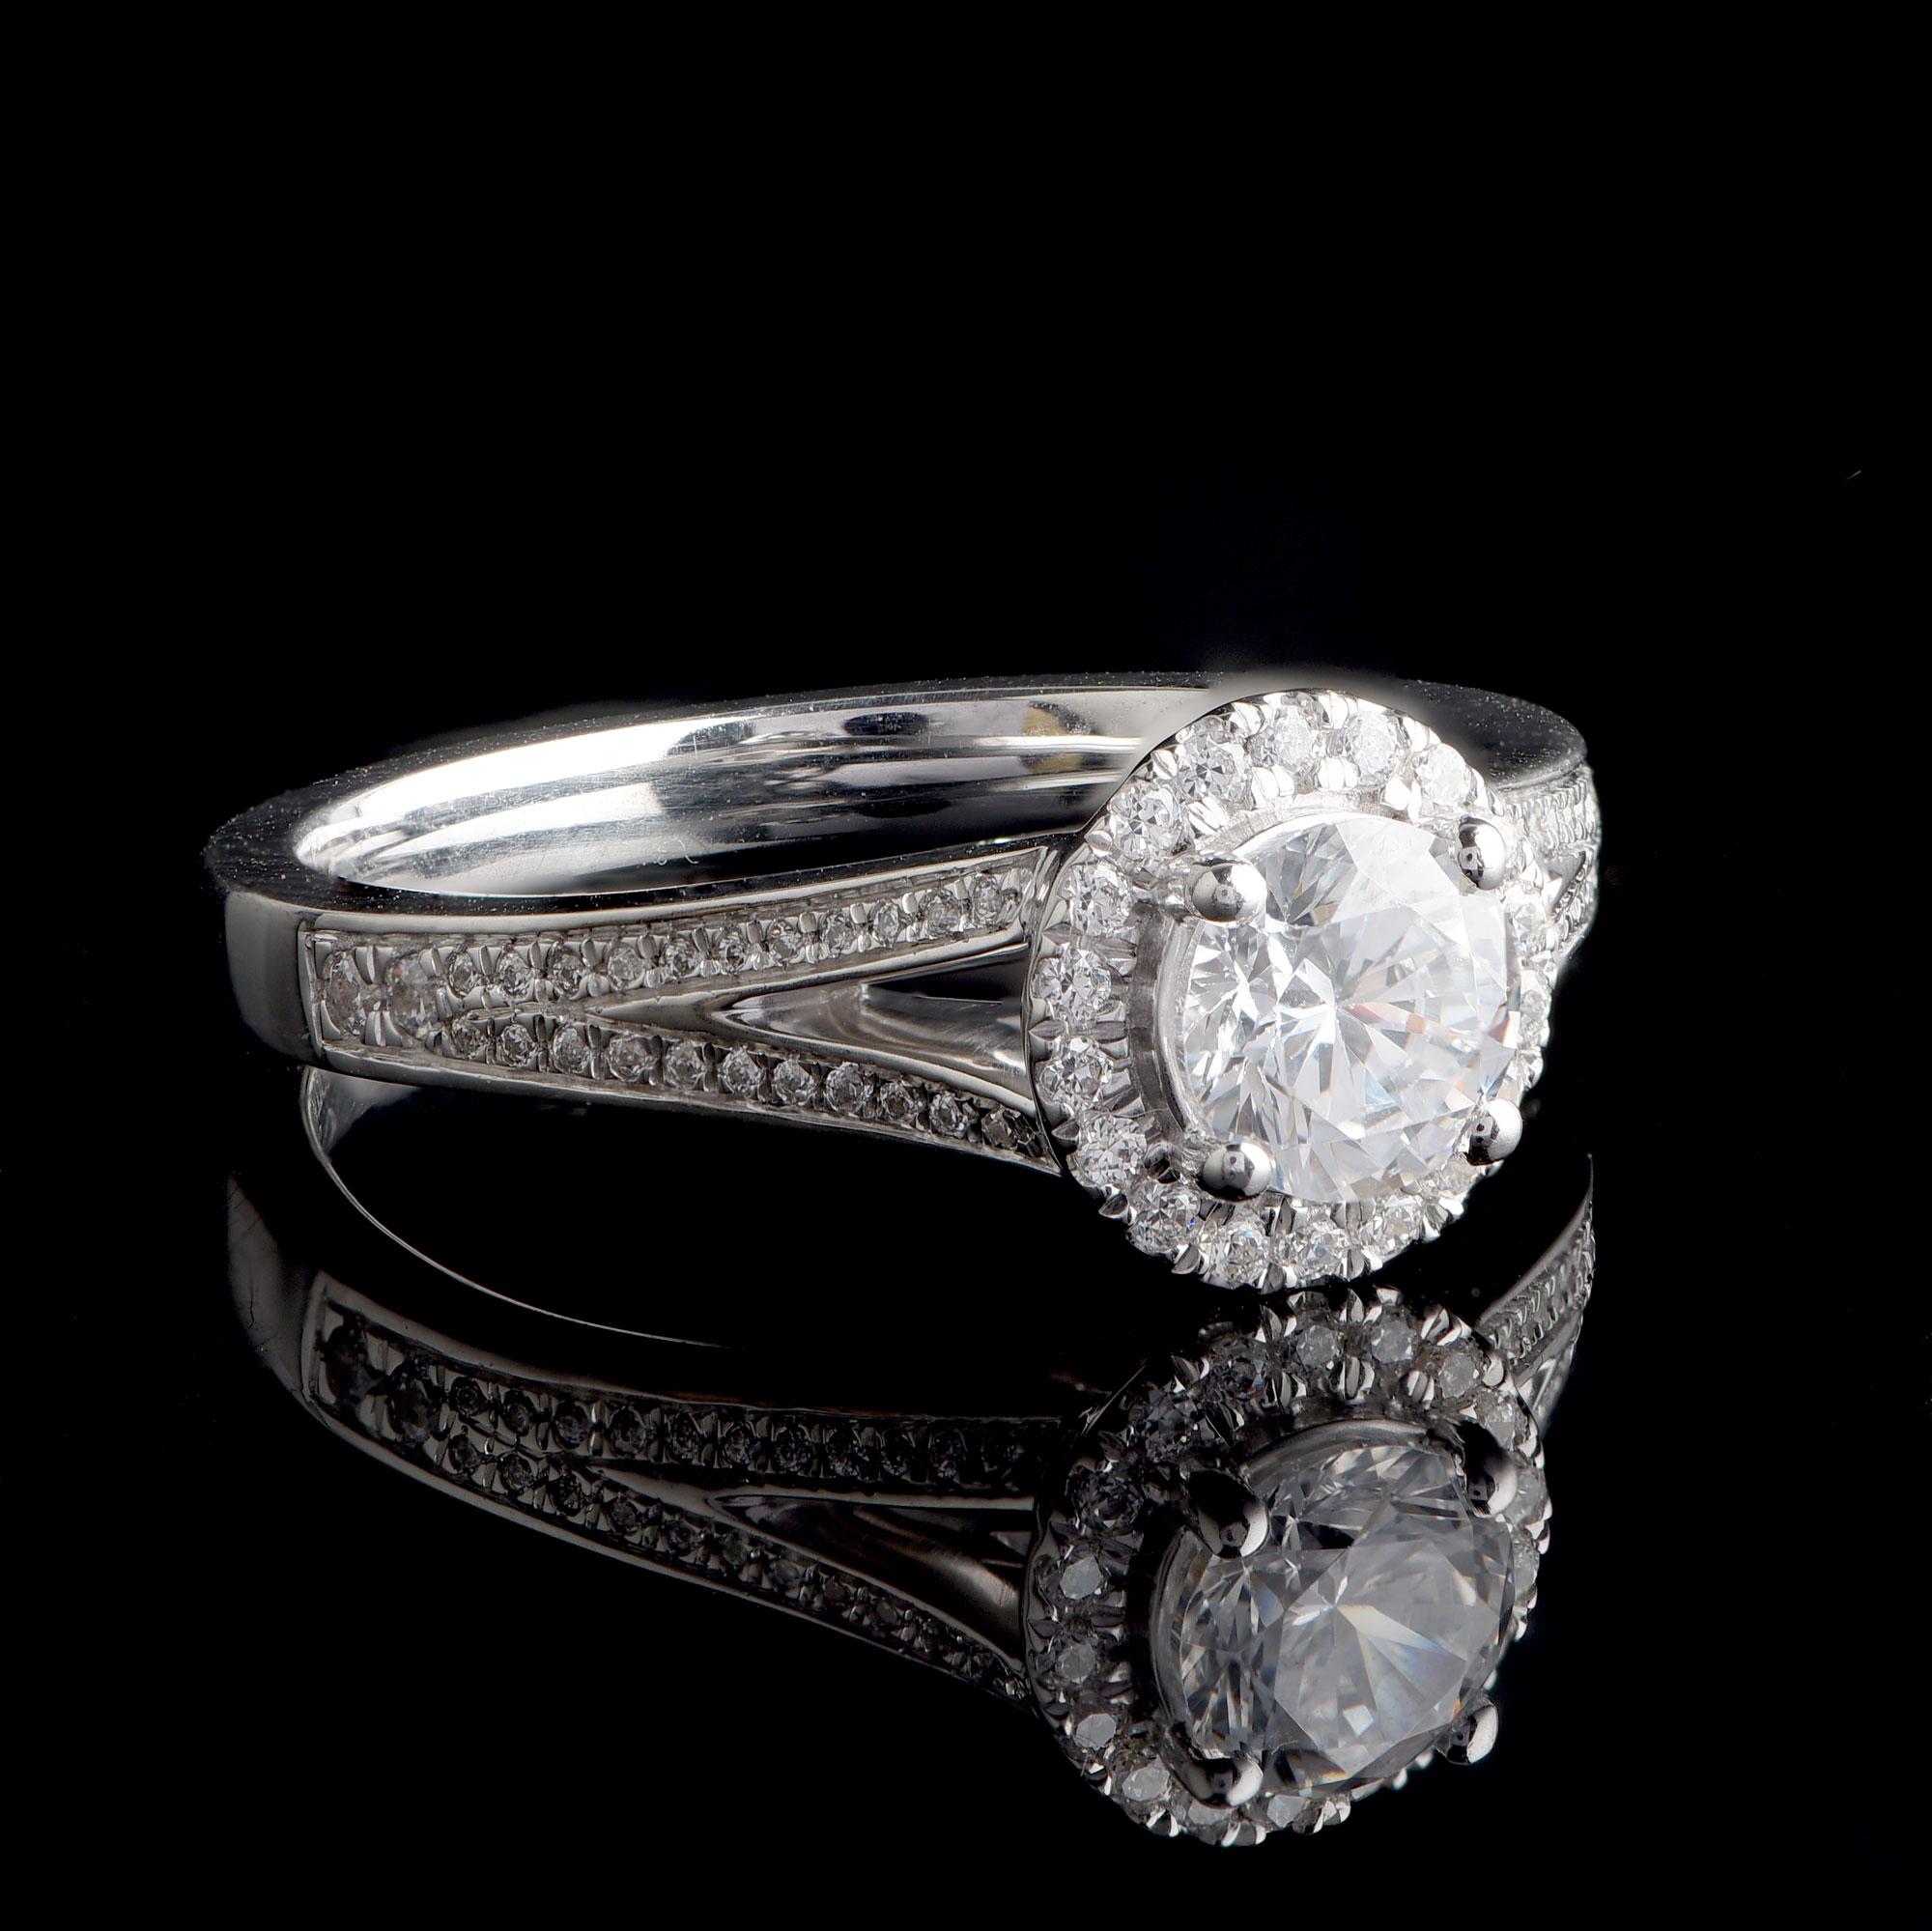 66 Diamanten im Brillantschliff und 1 GIA-zertifizierter Mittelstein sind in diesem Brautring mit geteiltem Schaft in einer eleganten Zackenfassung gefasst. Dieser Ring wird von unseren hauseigenen Experten aus 18 Karat Weißgold gefertigt. Die